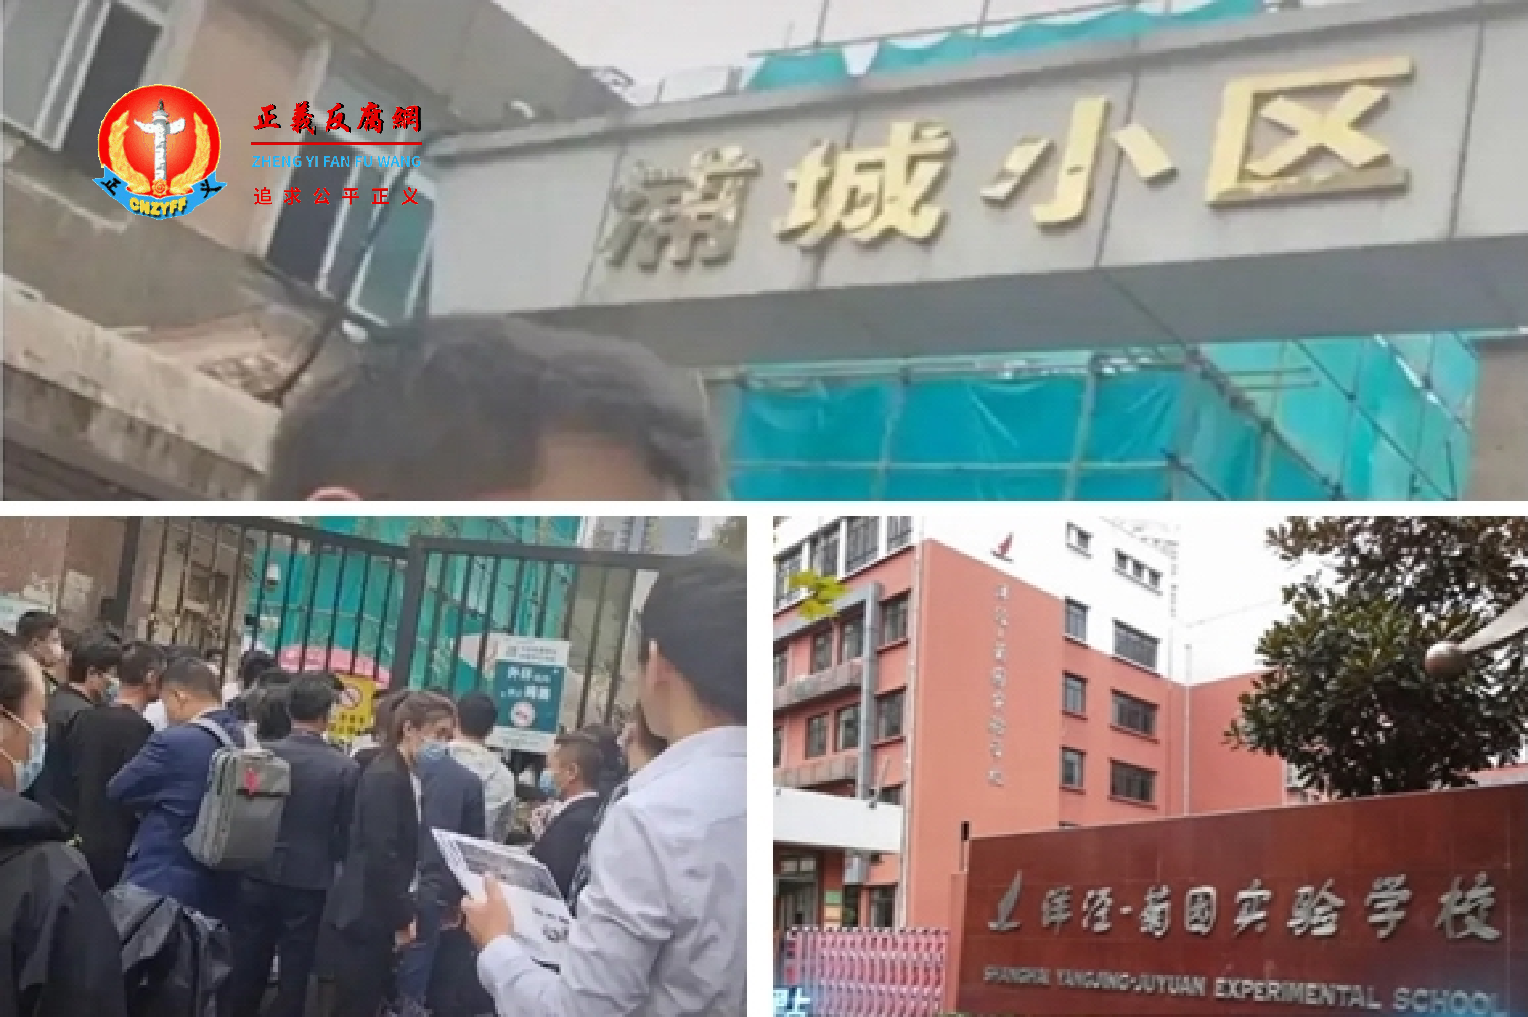 上海浦城小区的93套房一天之内全部售罄，房东套现4.5亿。.png